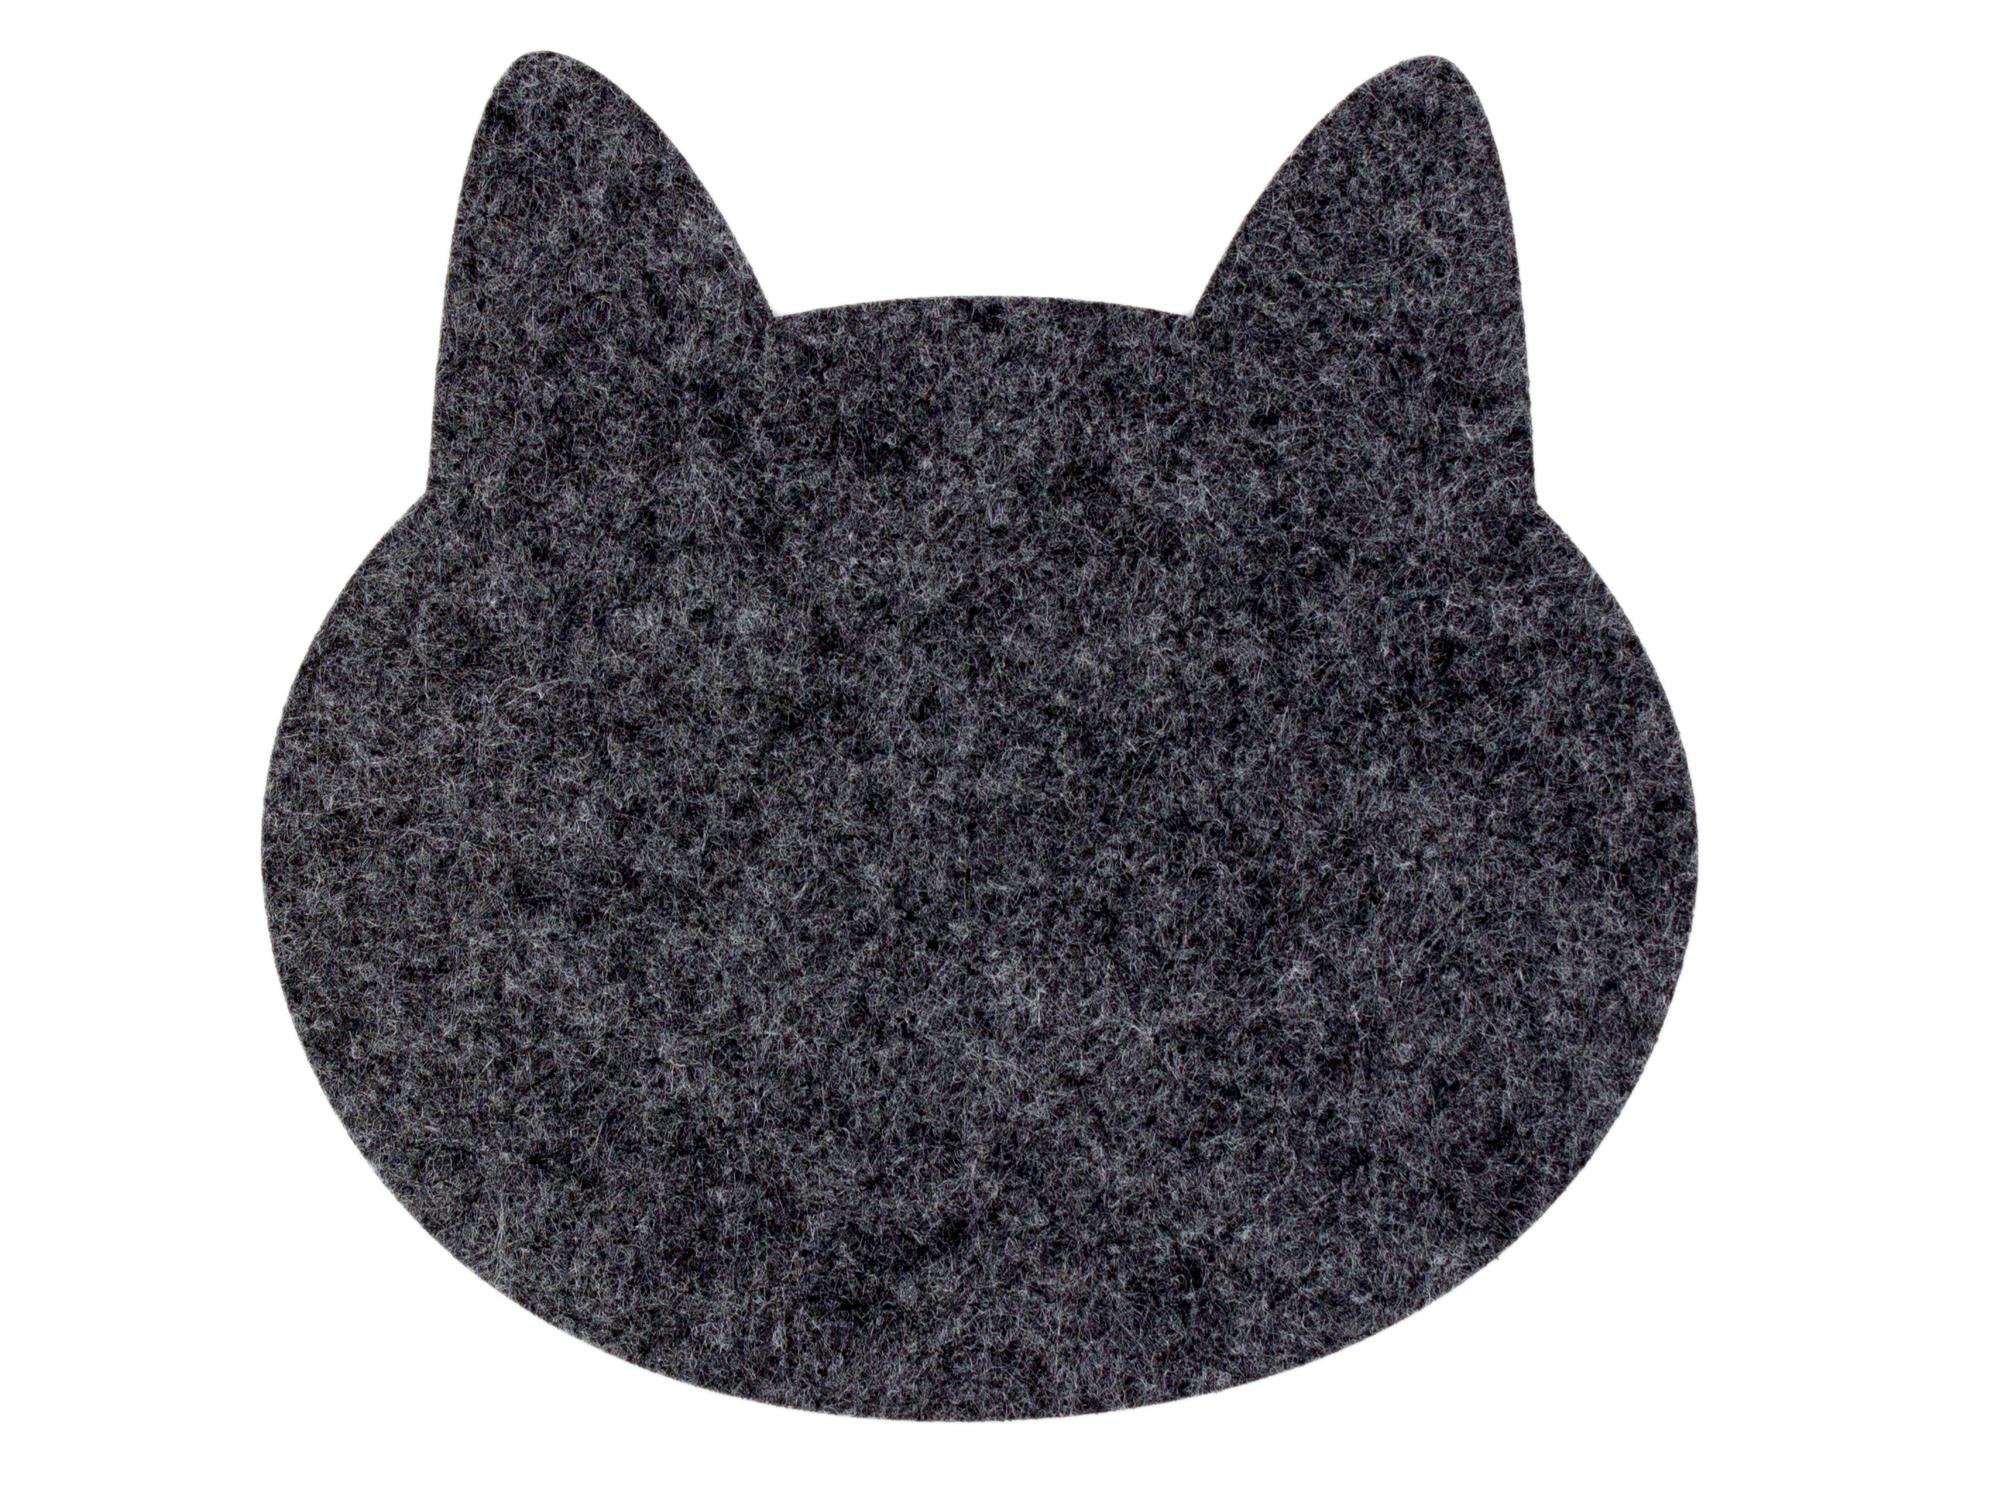 Topfuntersetzer aus Filz in Katzenform, 6er Set, graumeliert und dunkelgrau (LX1505)